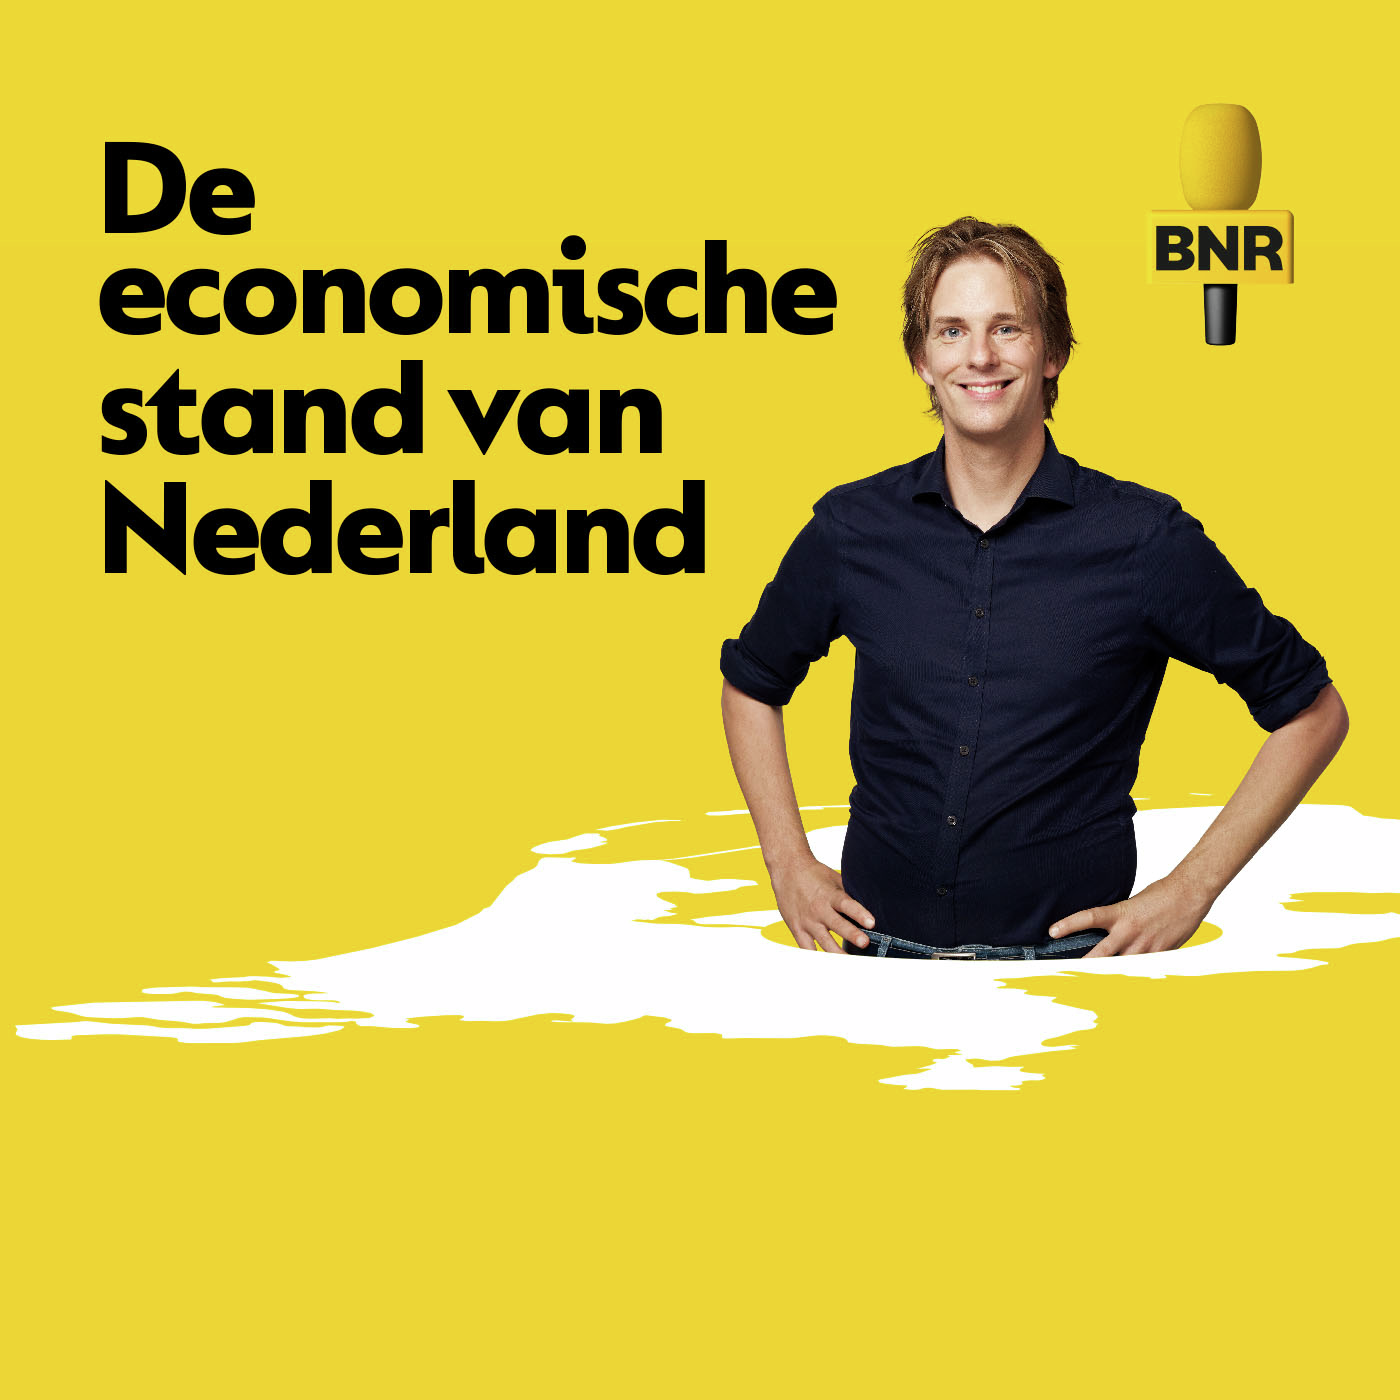 De economische stand van Nederland | Hoe maak je pensioeninformatie interessant voor deelnemers?